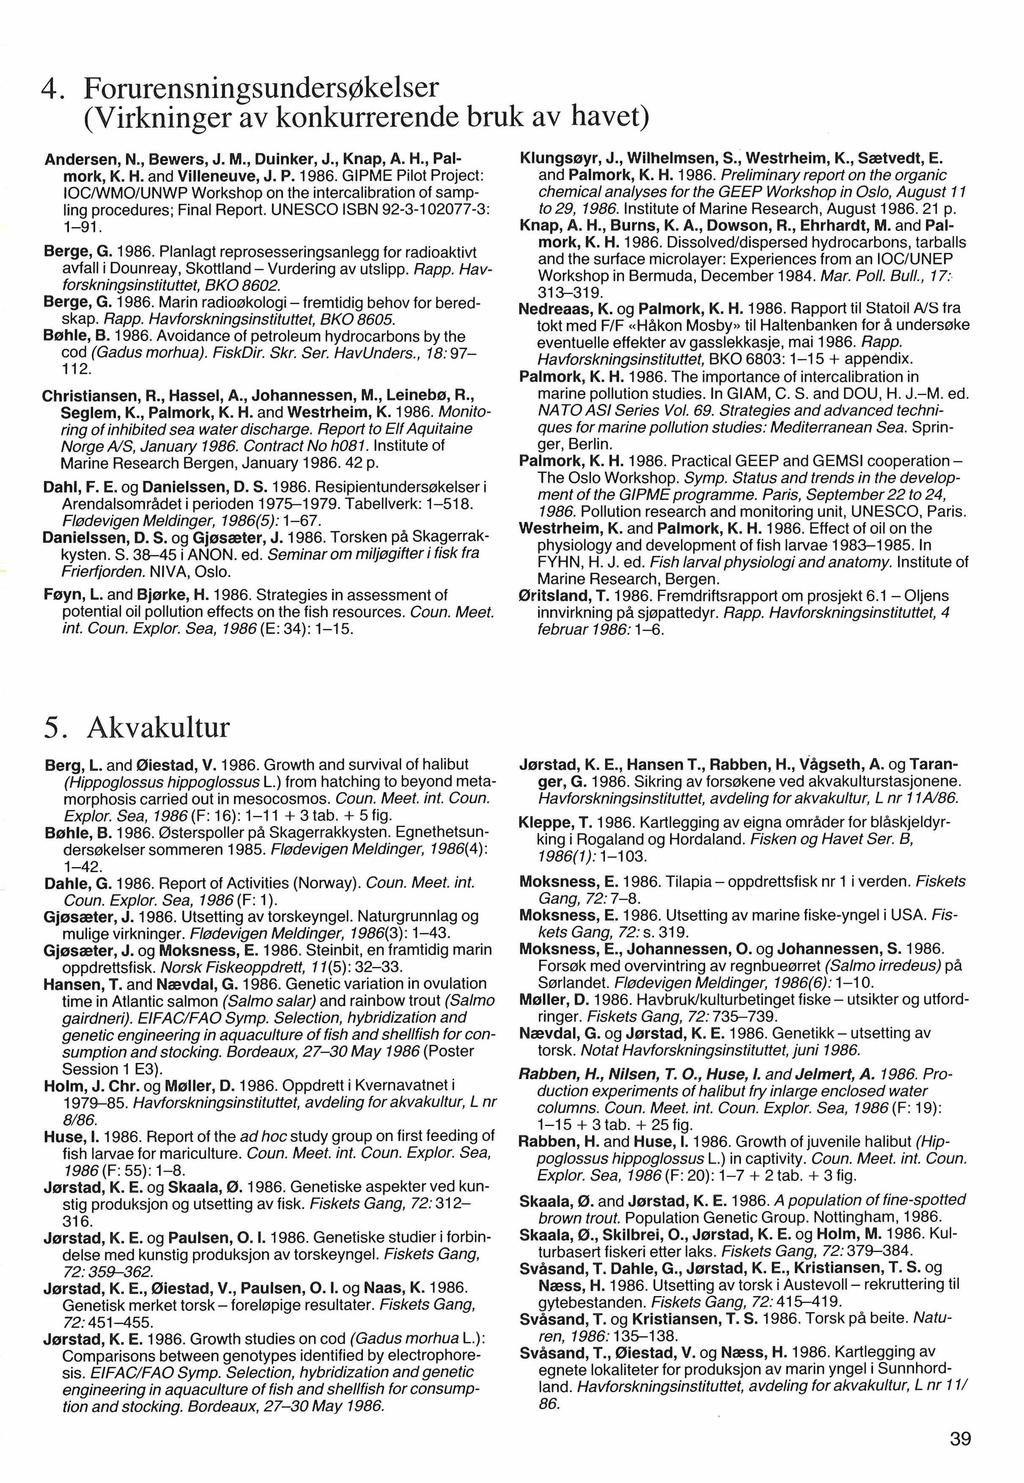 4. Forurensningsunders~kelser (Virkninger av konkurrerende bruk av havet) Andersen, N., Bewers, J. M., Duinker, J., Knap, A. H., Palmork, K. H. and Villeneuve, J. P. 1986.